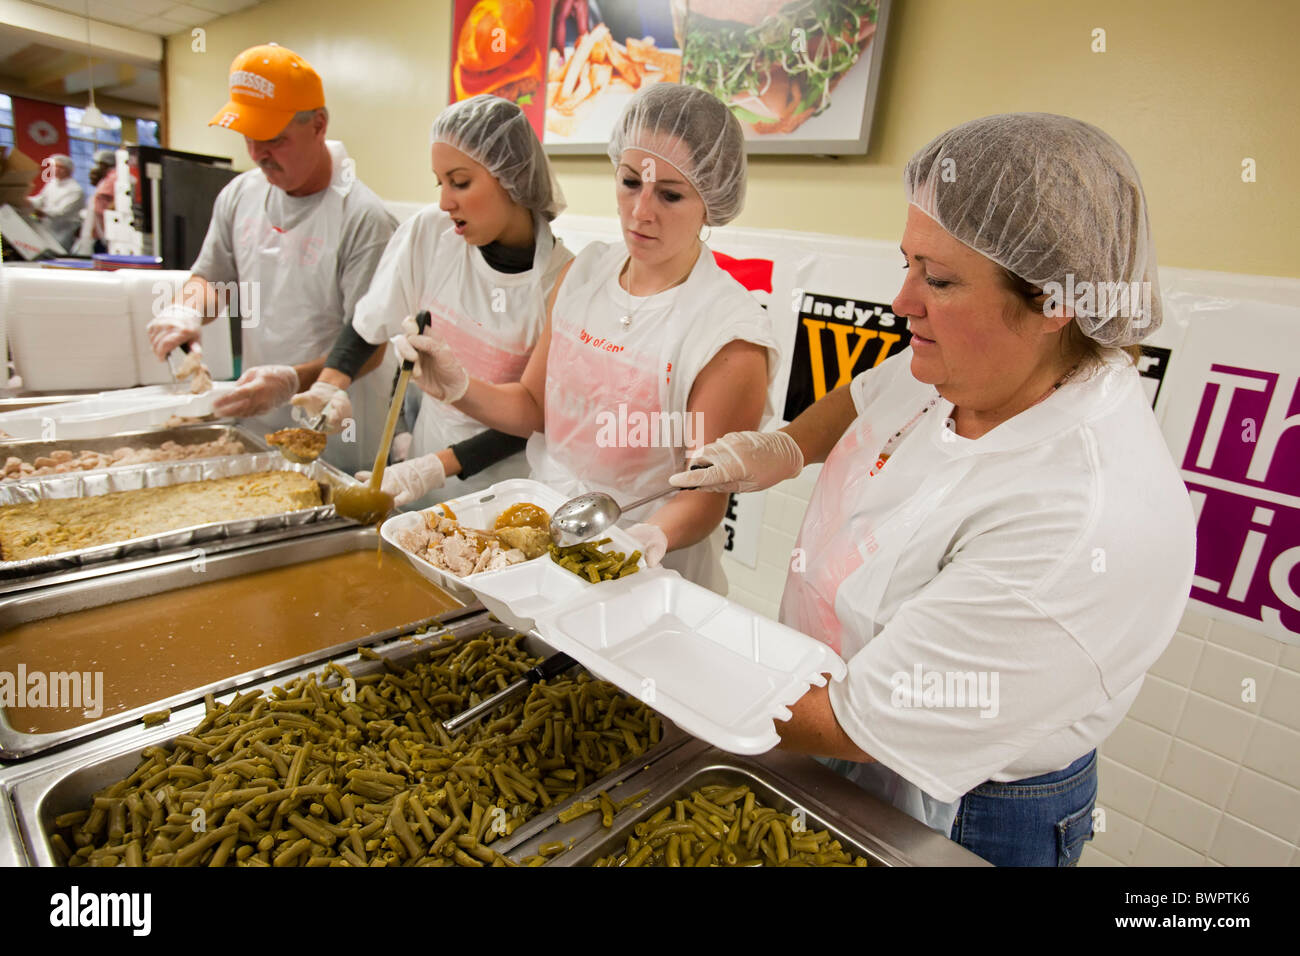 Les bénévoles de préparer le dîner de Thanksgiving pour des milliers de familles dans le besoin Banque D'Images